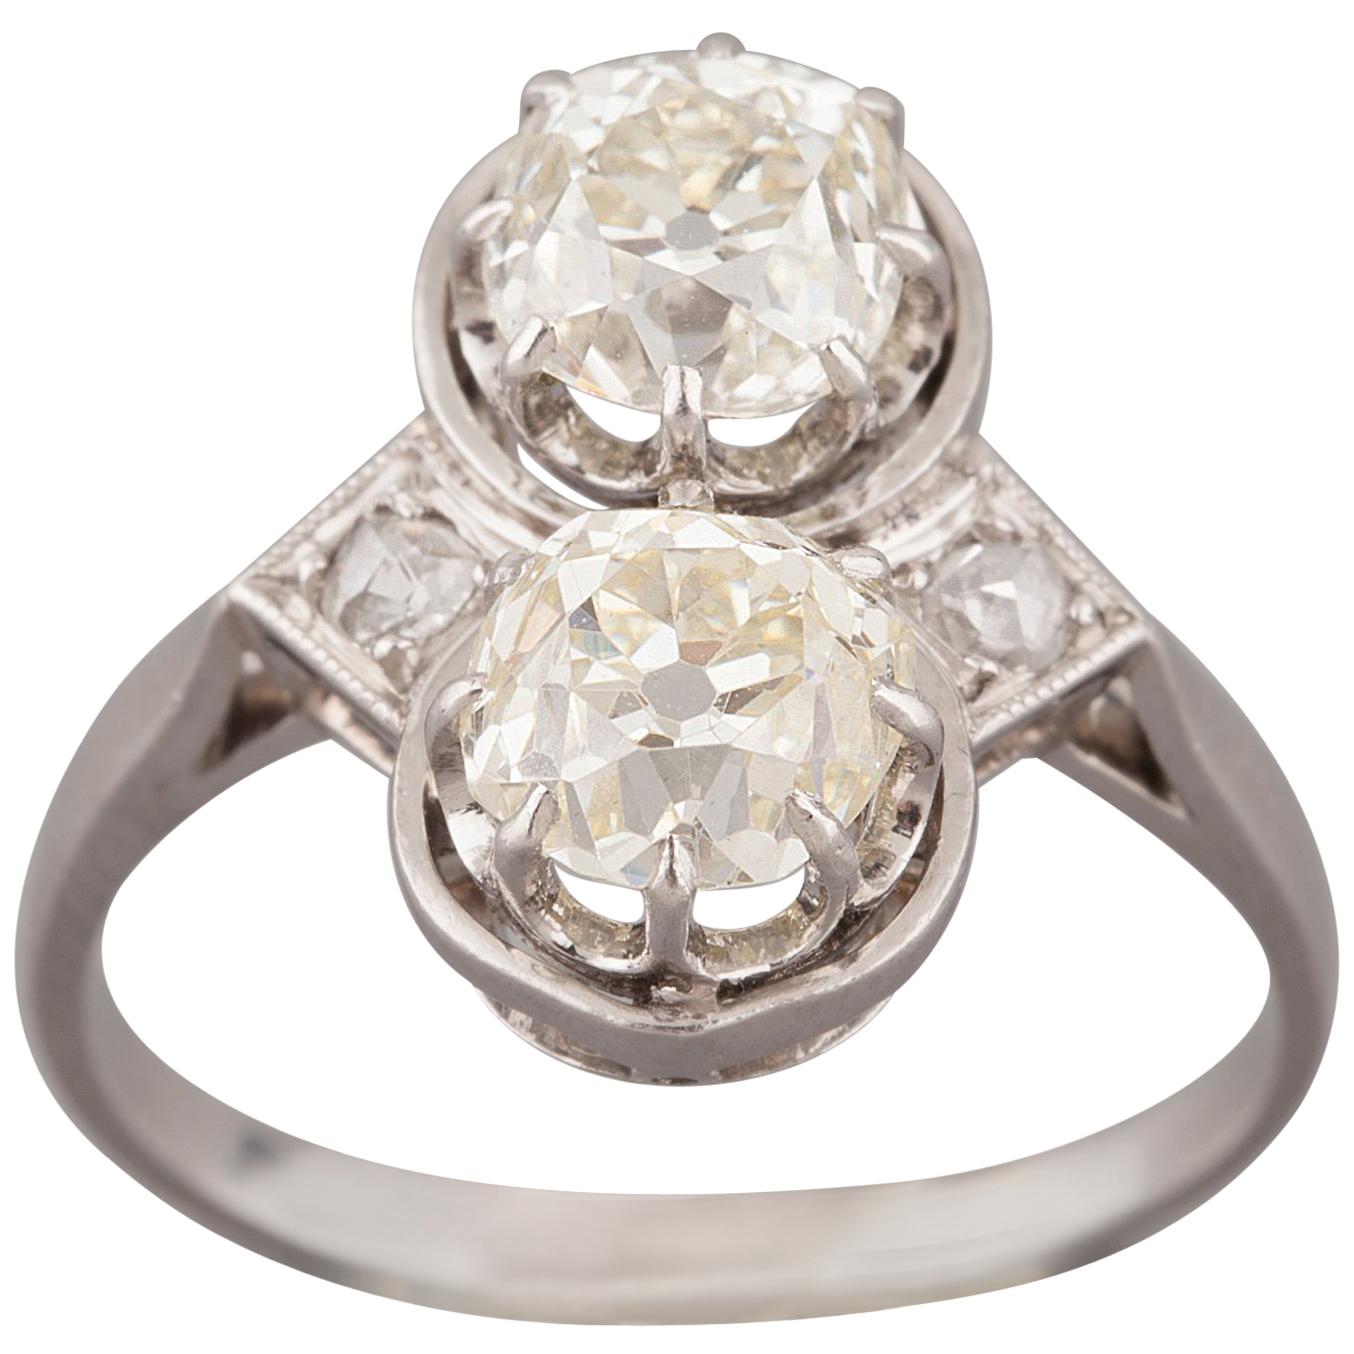 French Toi et Moi Diamonds Antique Ring